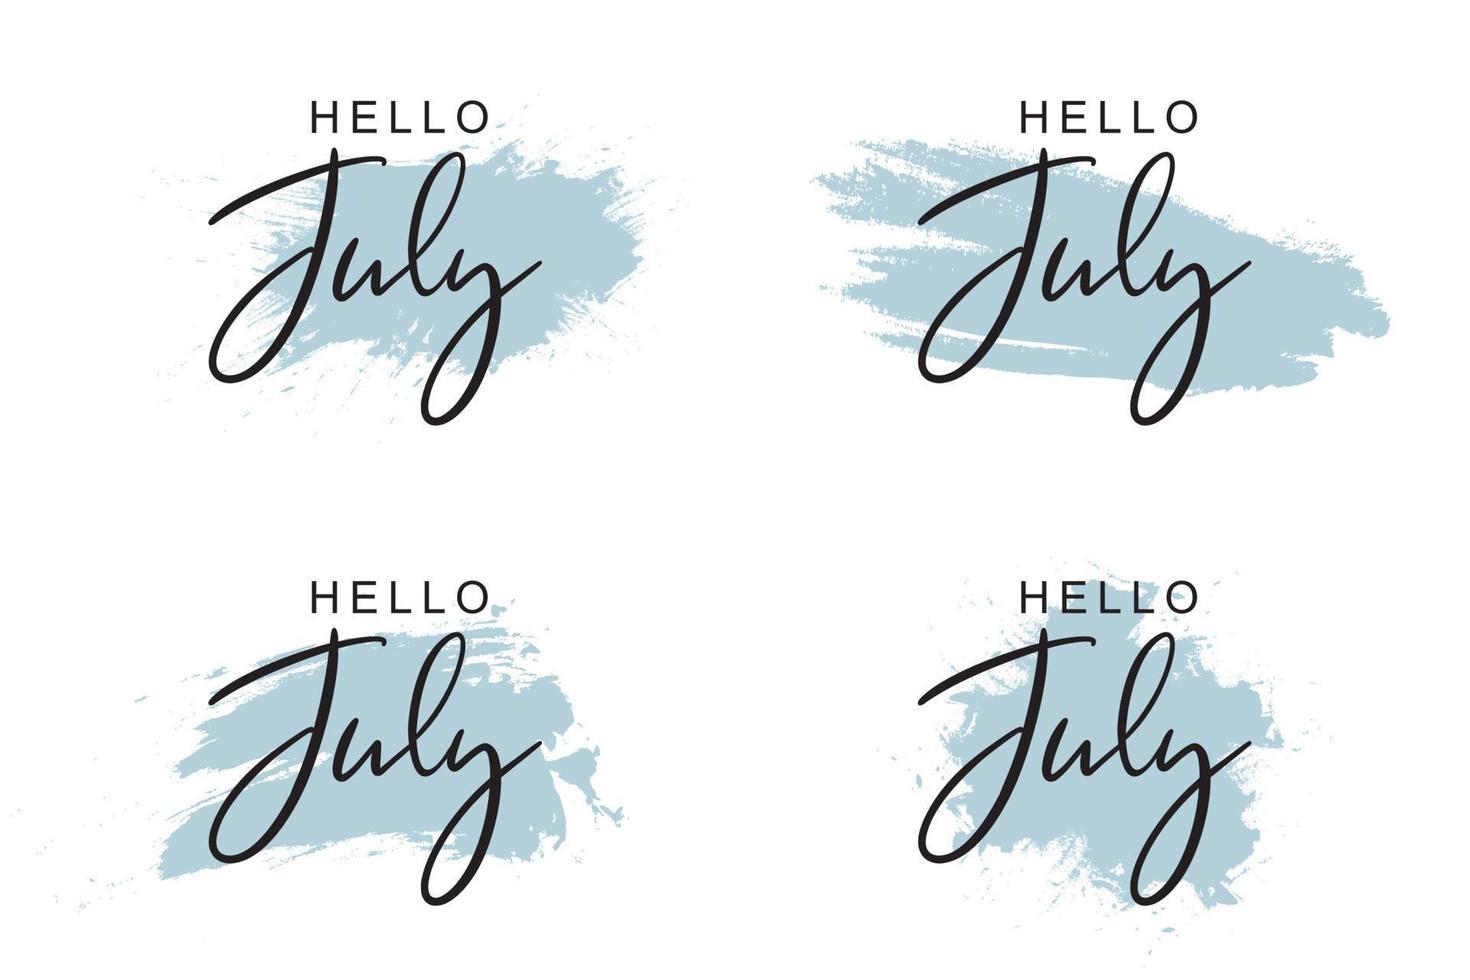 Olá saudações de julho com design de fundo suave vetor